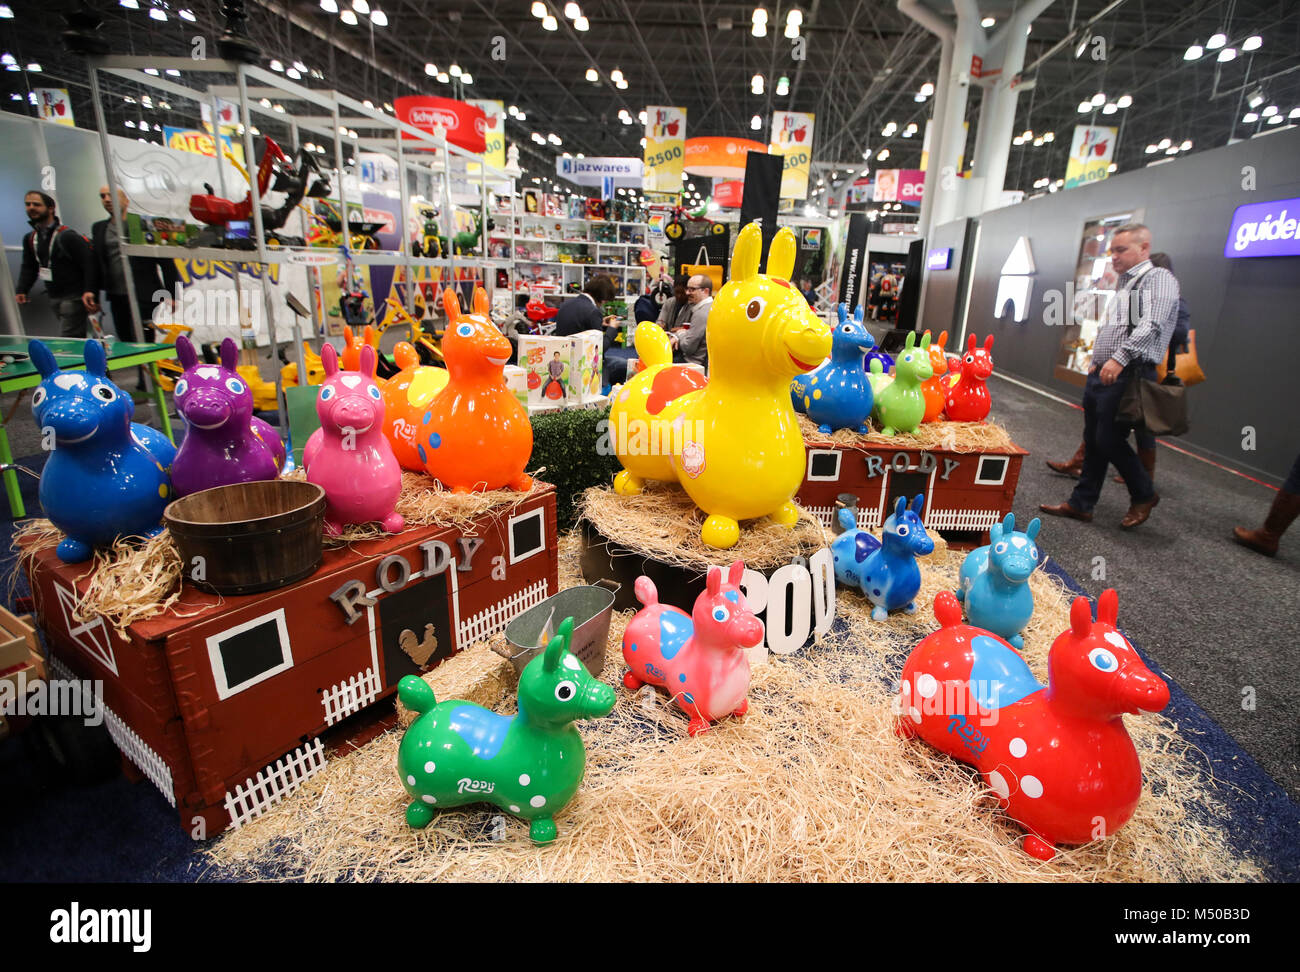 Nueva York, Estados Unidos. 19 Feb, 2018. Rody juguetes están en exhibición  en la 115 North American International Toy Fair en el Centro de  Convenciones Jacob K. Javits en Nueva York, Estados